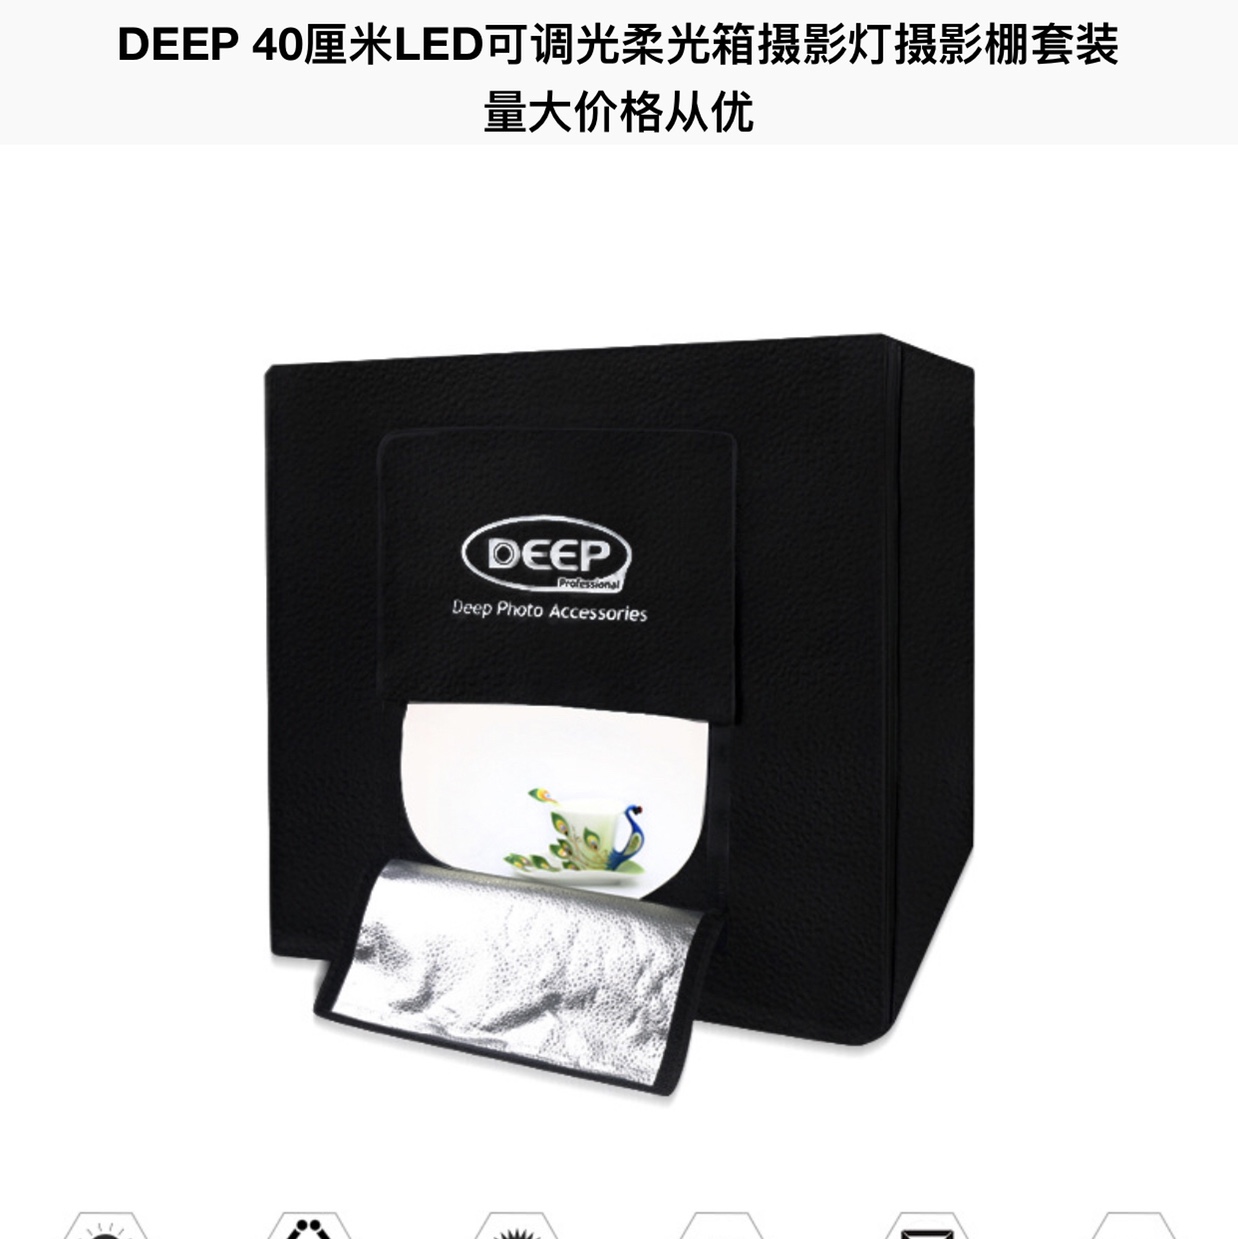 DEEP LED40CM调光摄影棚摄影器材摄影灯套装